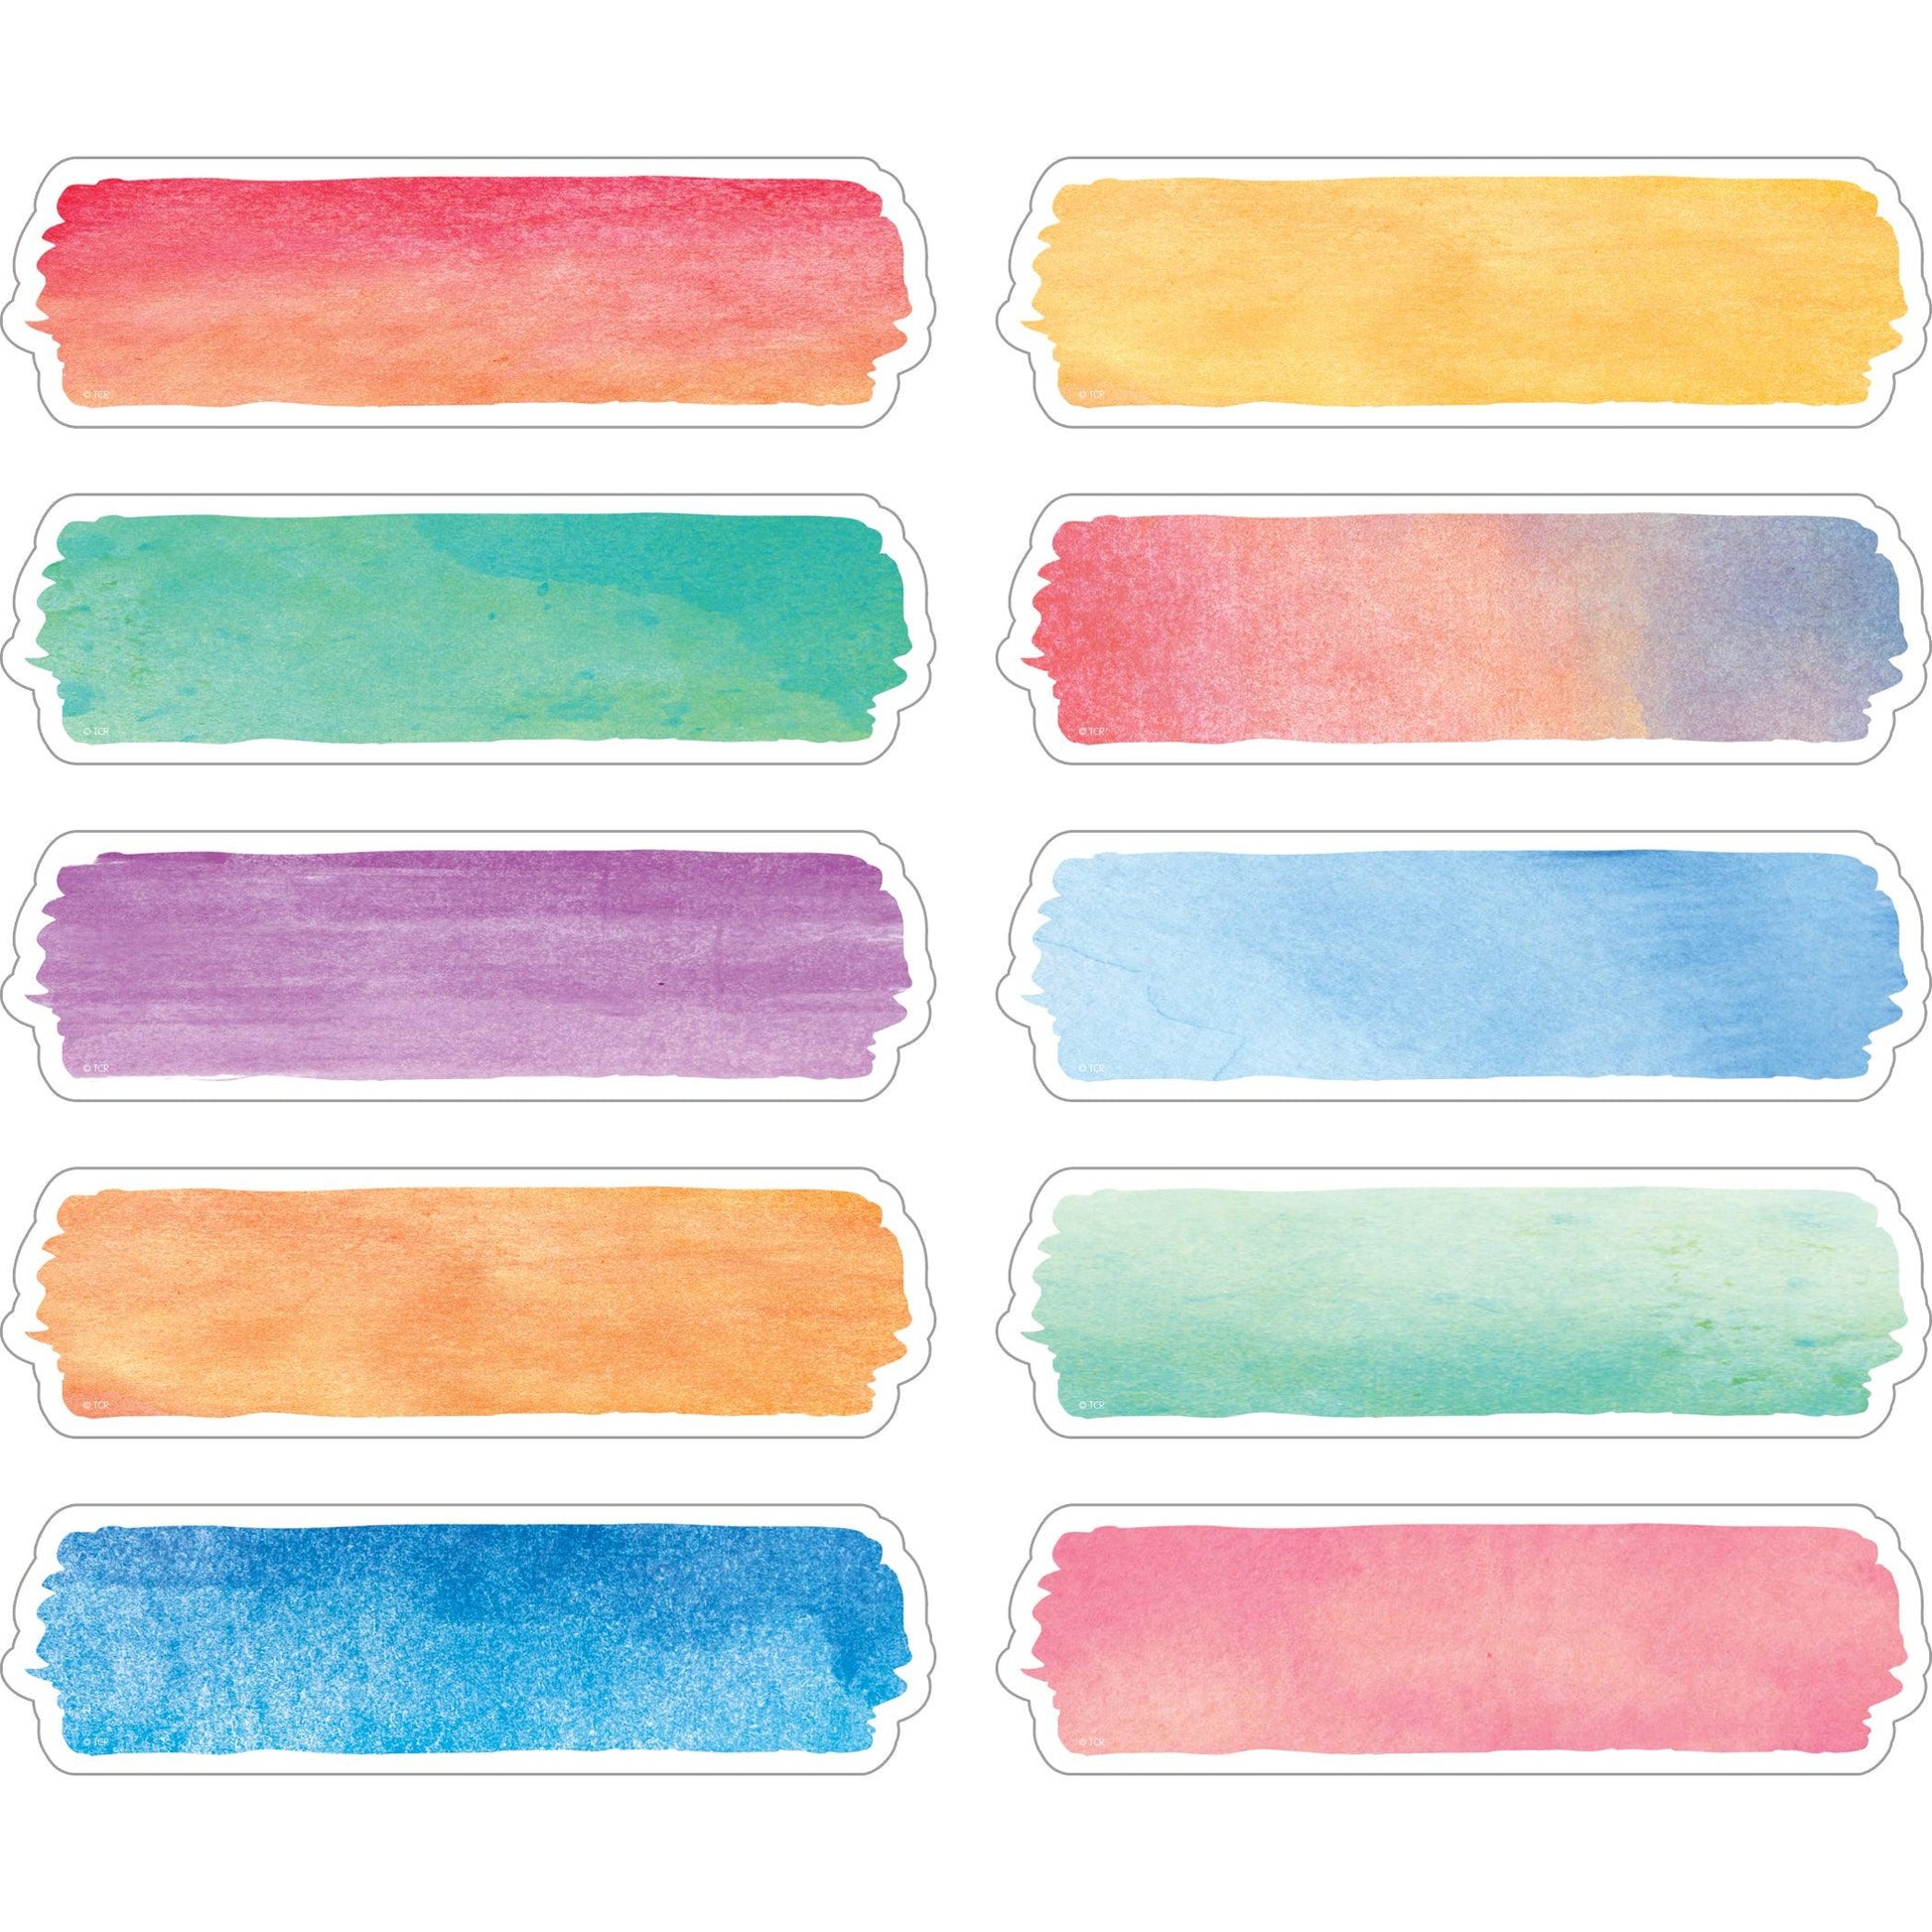 Watercolor Labels, Non-Adhesive, 120 Per Pack, 3 Packs - Loomini